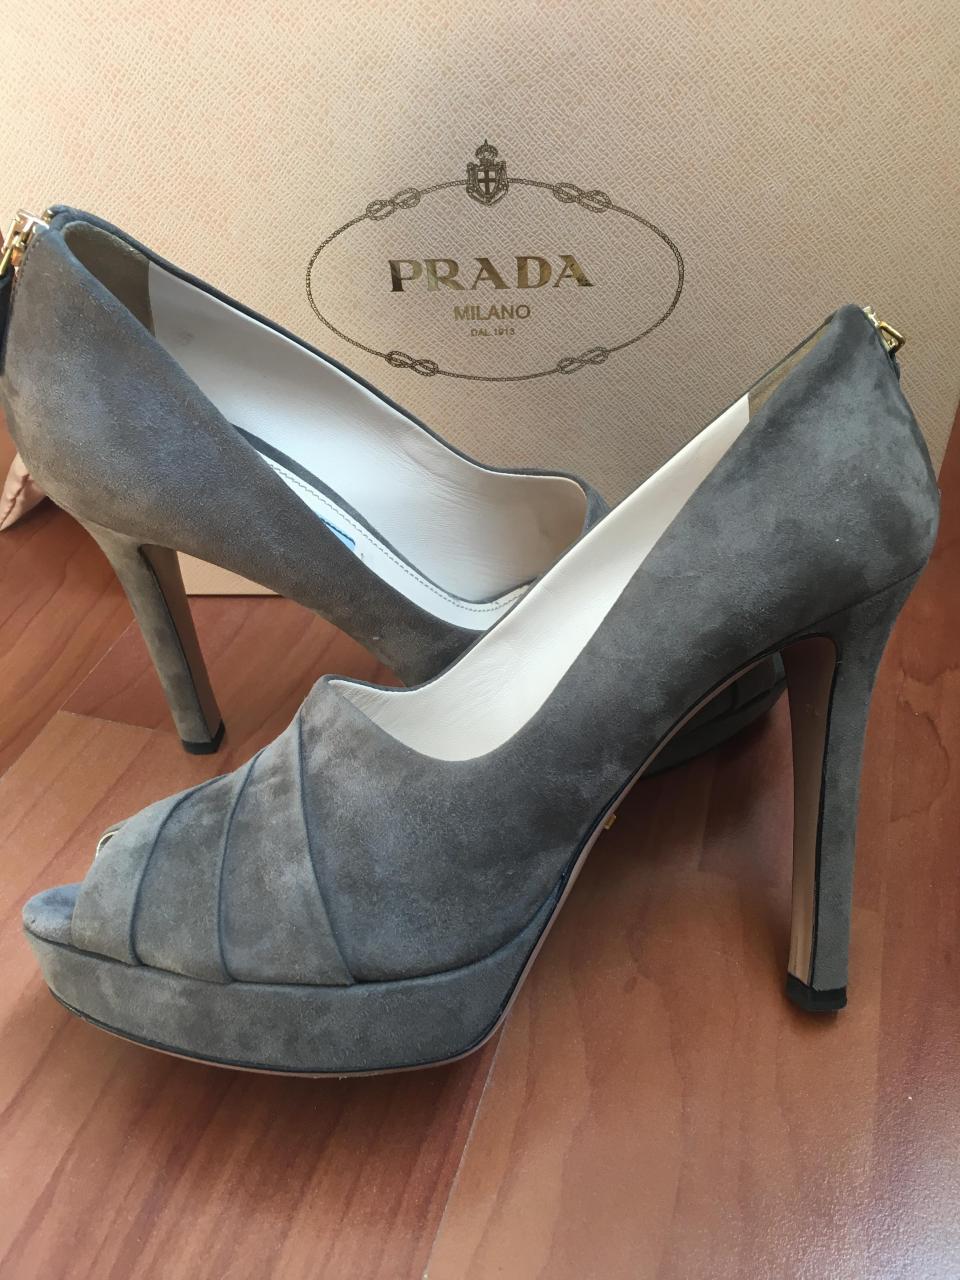 prada sparkly shoes